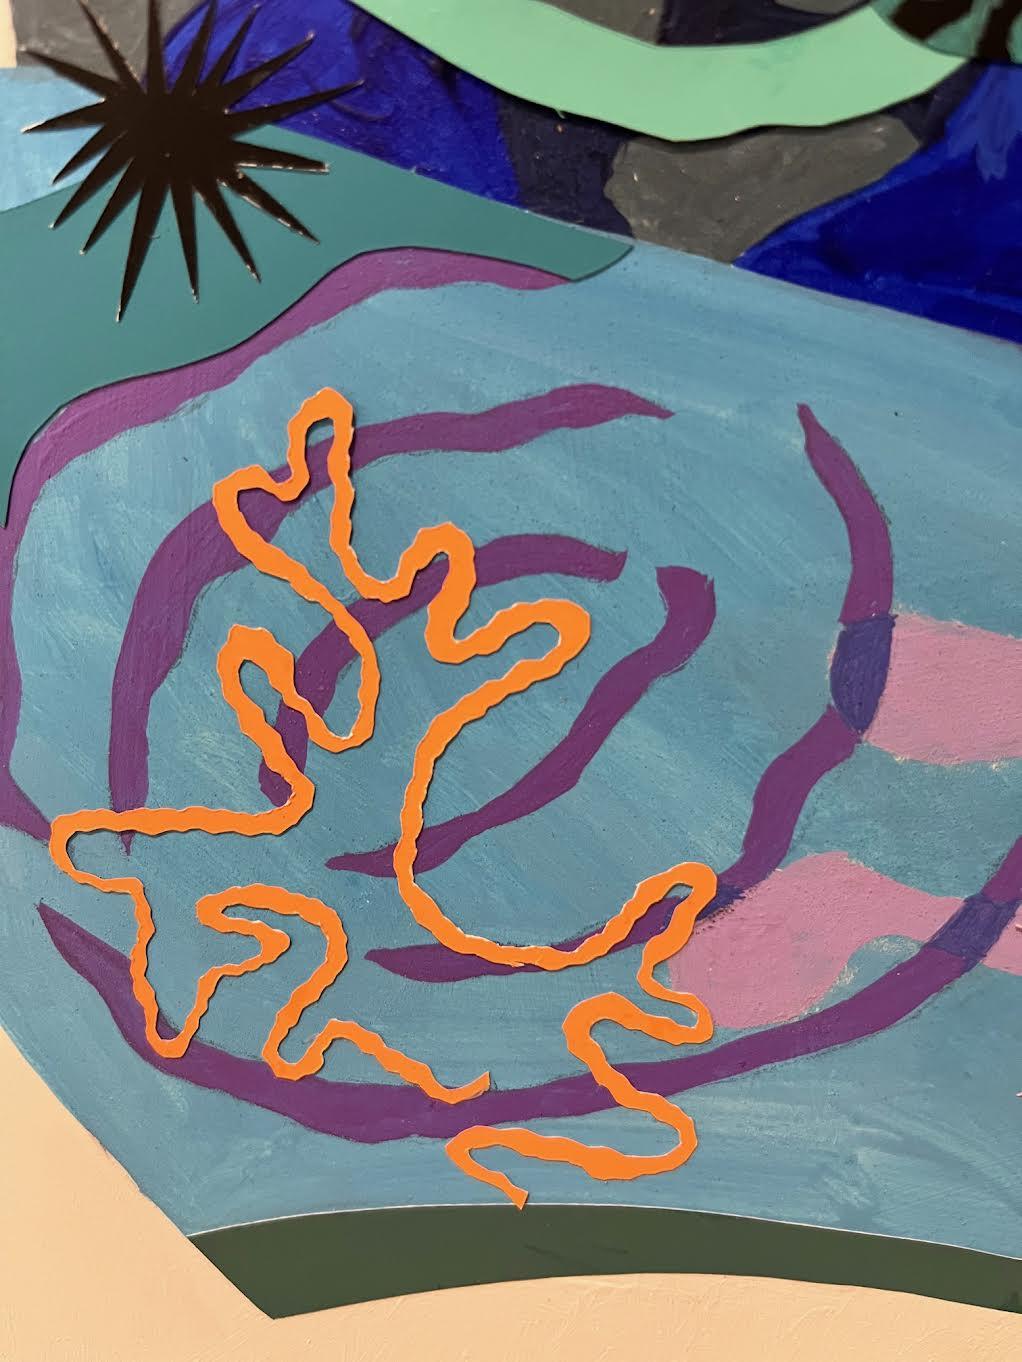 Sous la mer, vie océanique colorée aux bords durs et aux détails ludiques - Contemporain Painting par Philomena Marano